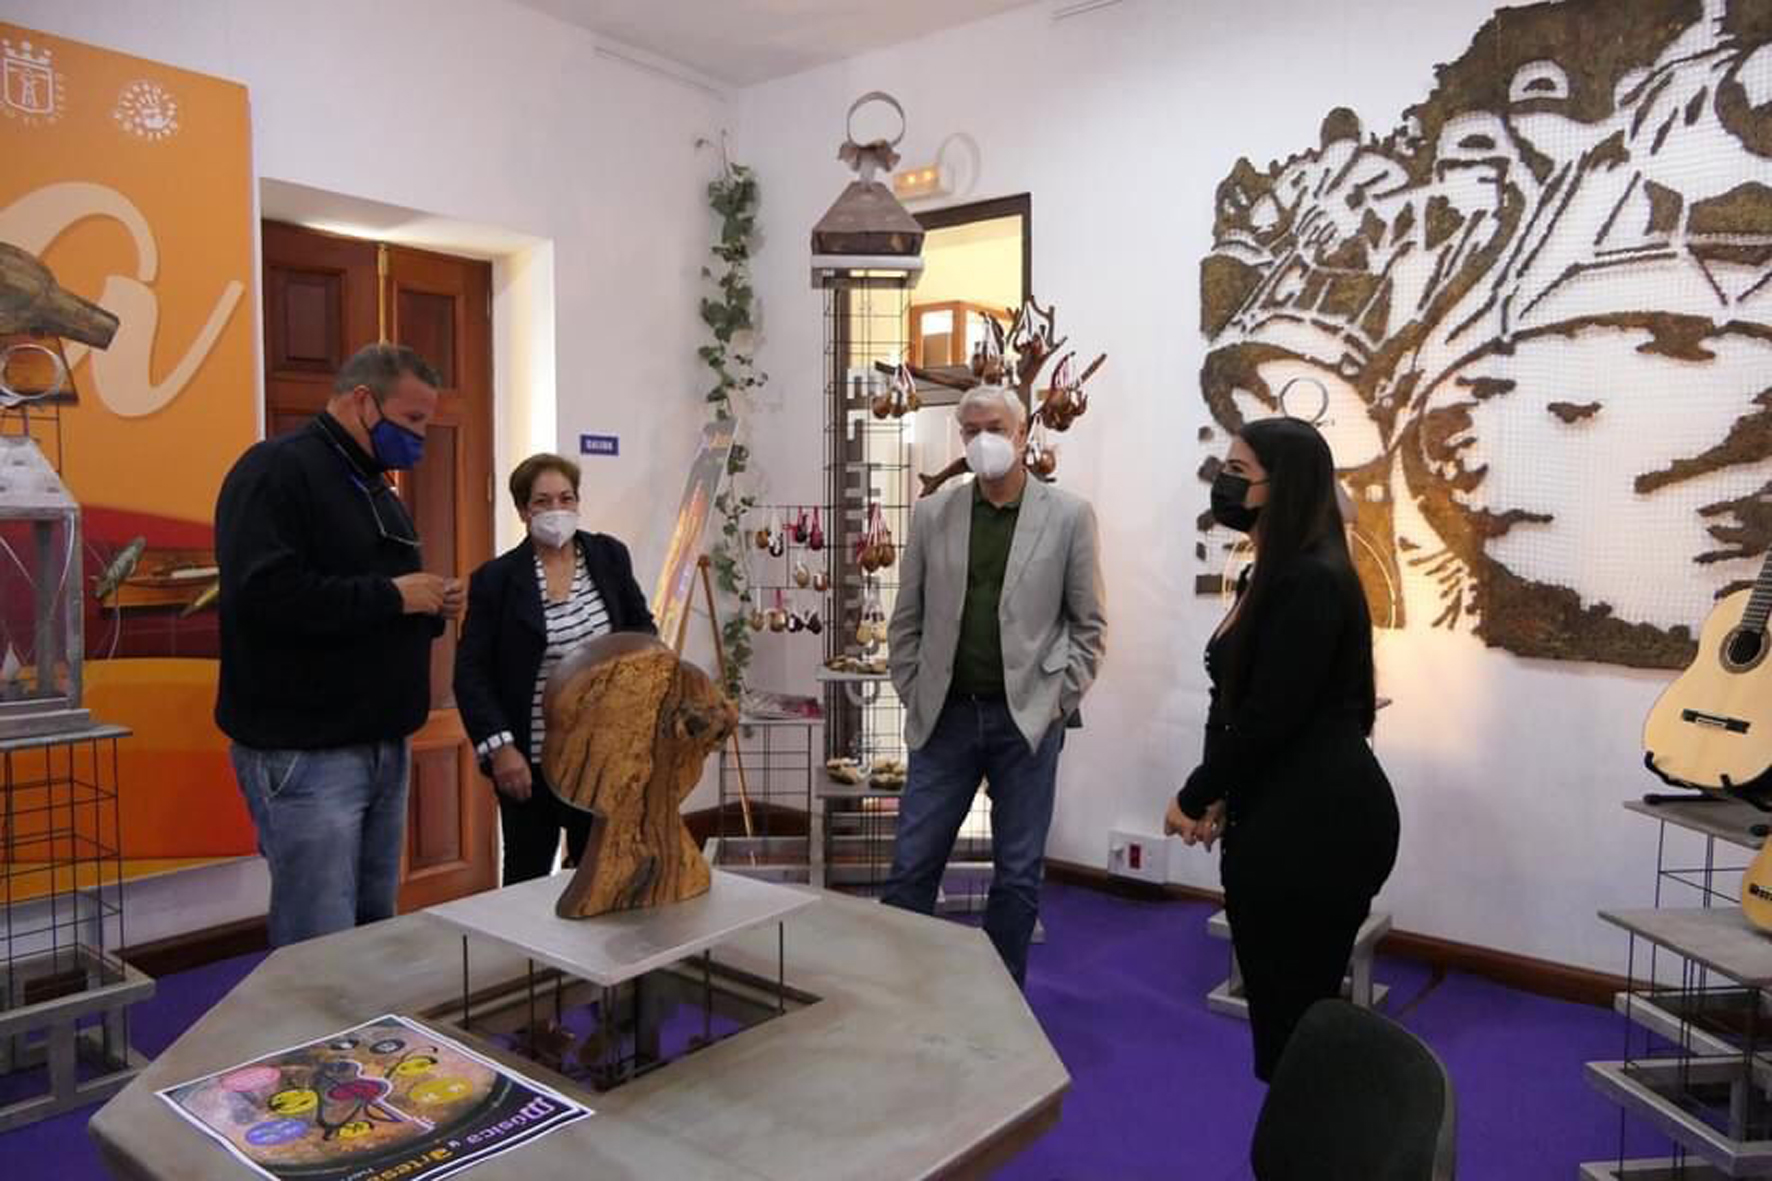 El Cabildo presenta la Exposición “Música y Artesanía Herreña”